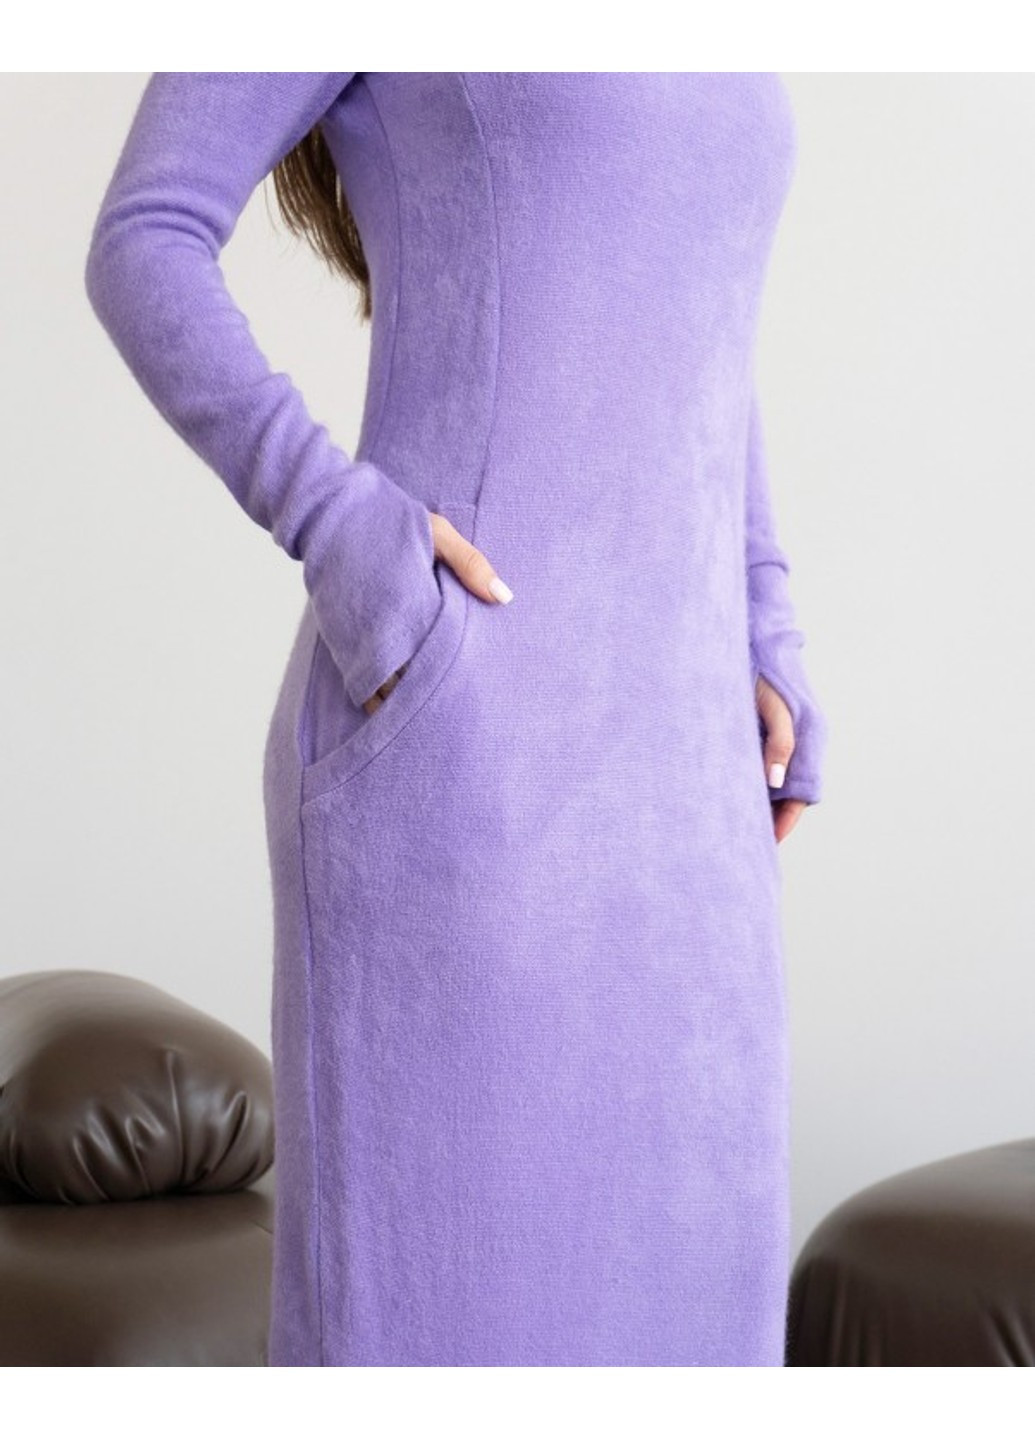 Фиолетовое повседневный платья 14430 сиреневый ISSA PLUS